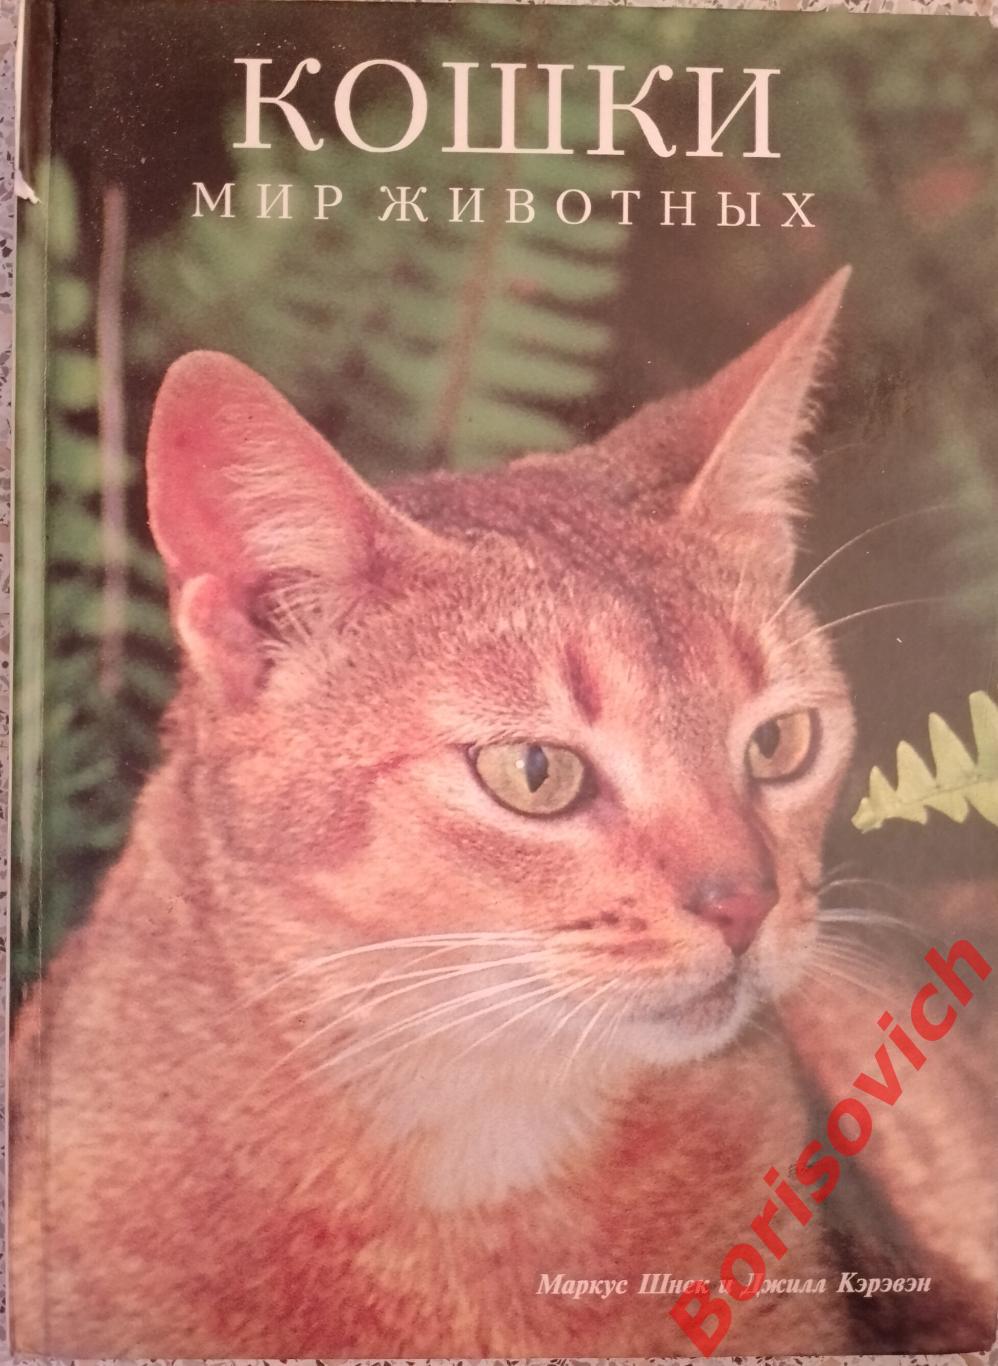 КОШКИ Мир животных Маркус Шнек и Джилл Кэрэвэн 1993 г 80 страниц